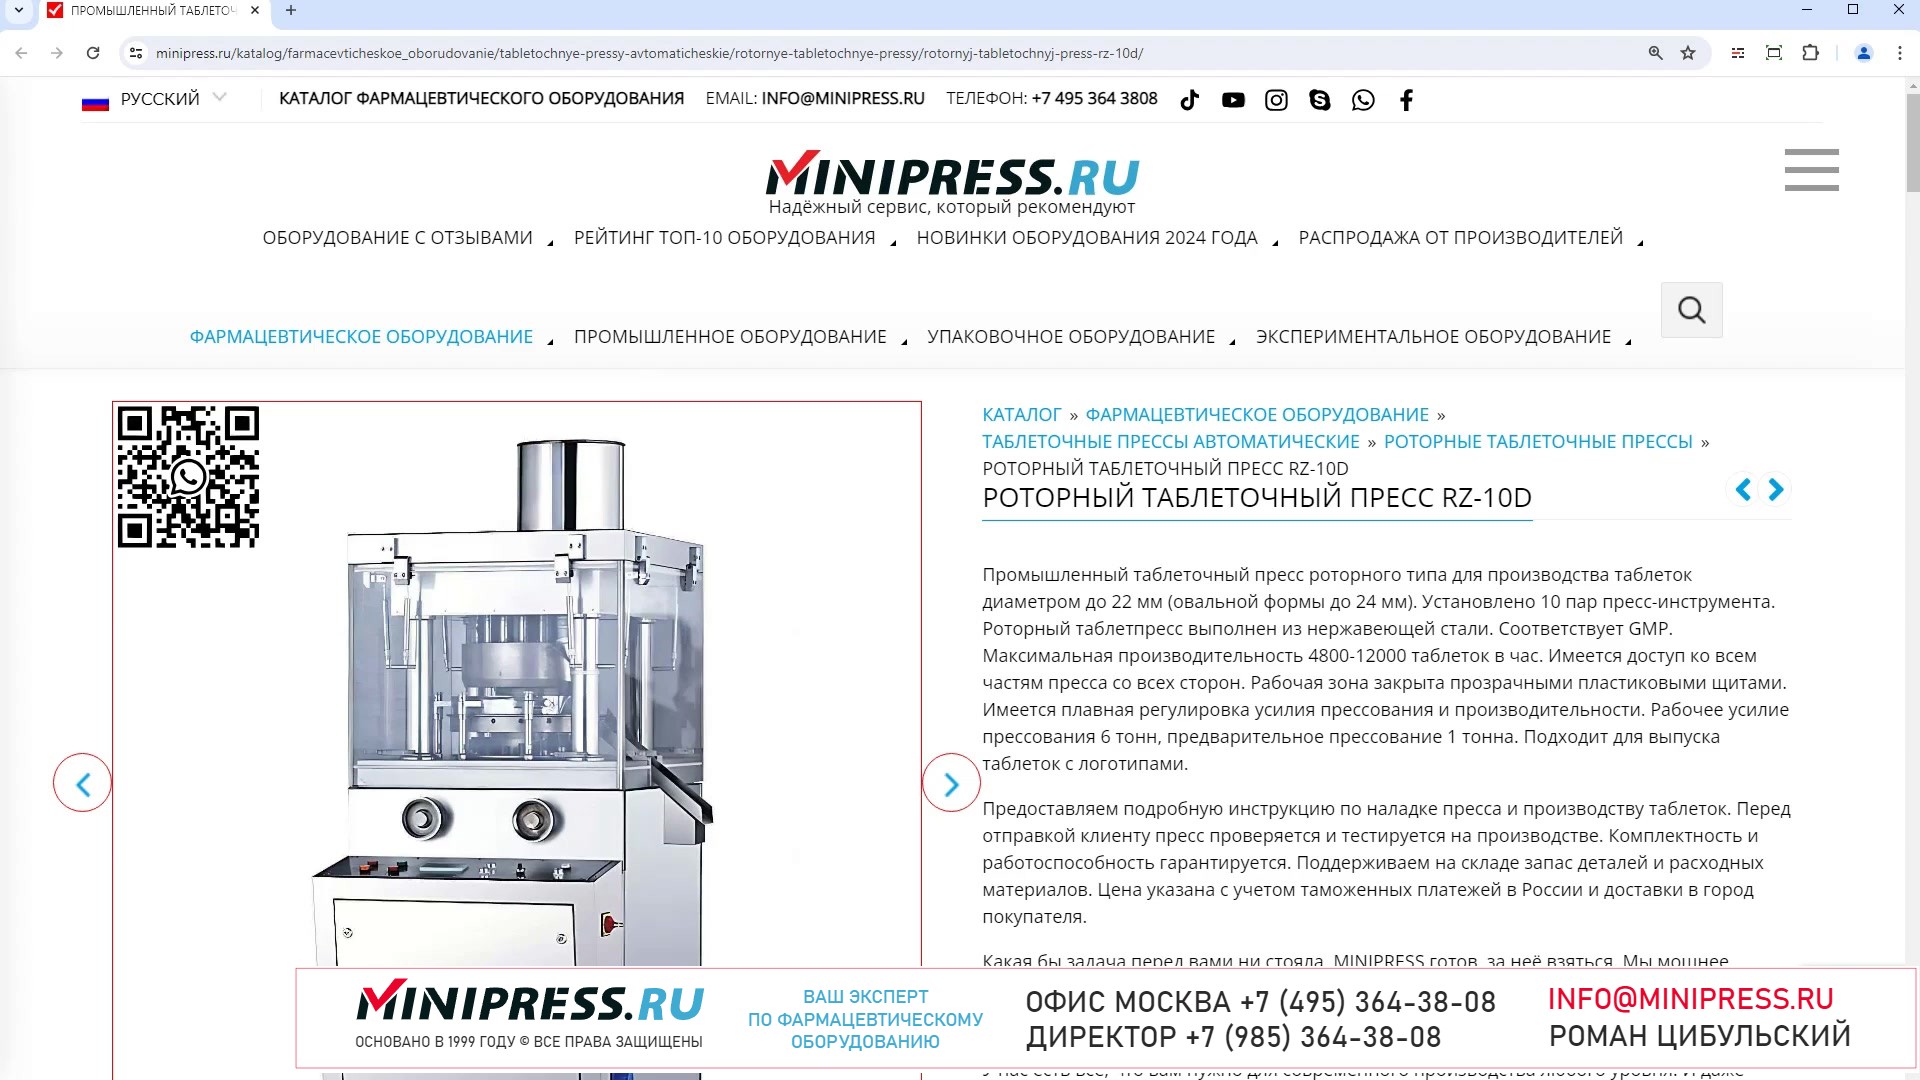 Minipress.ru Роторный таблеточный пресс RZ-10D